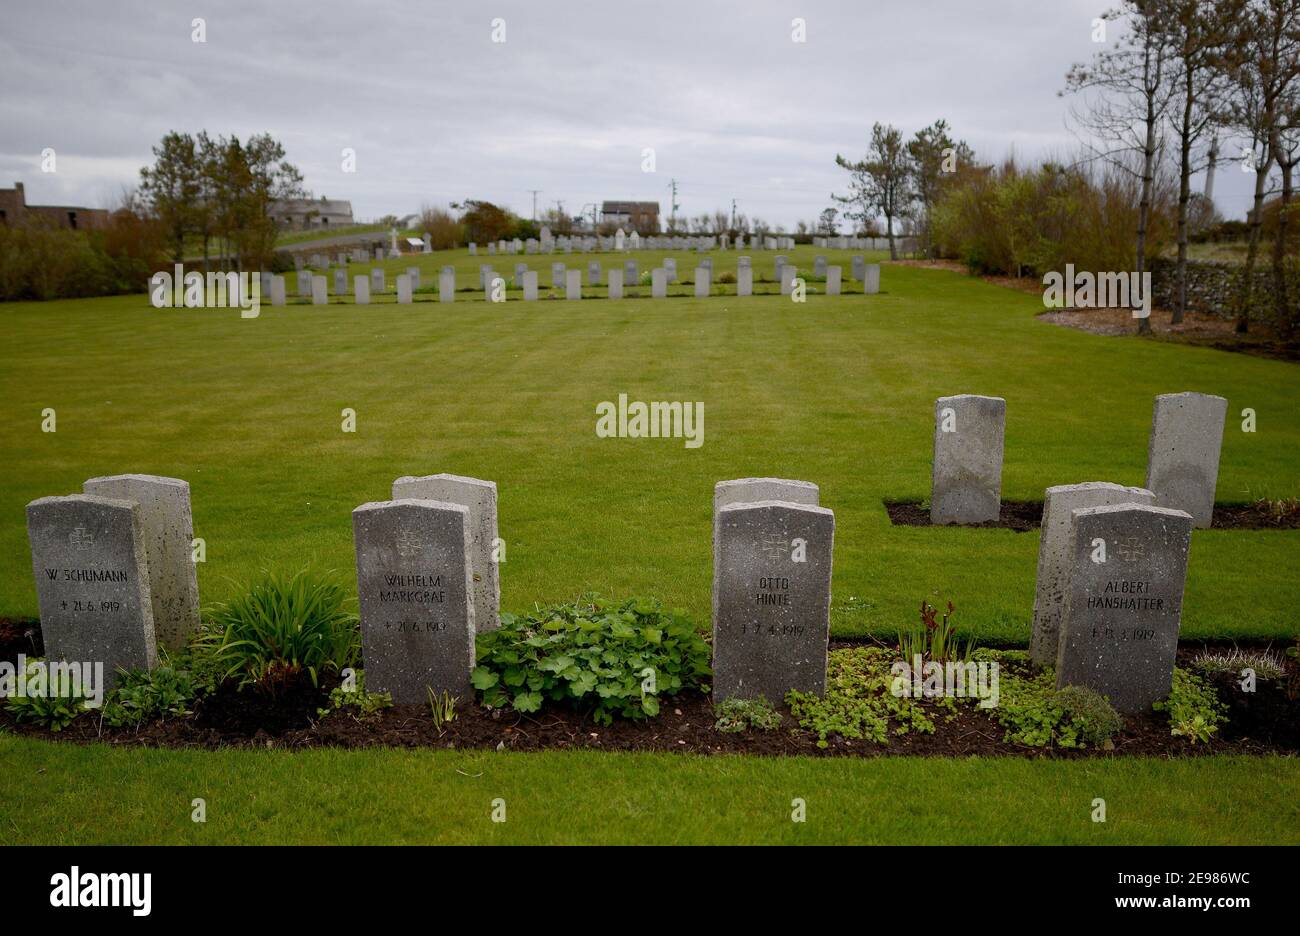 Tombe di 13 marinai tedeschi al cimitero navale di Lyness che è morto nel Grand scuttle, Orkney Islands, Scotland. Le Orkney Islands a nord della Scozia Foto Stock